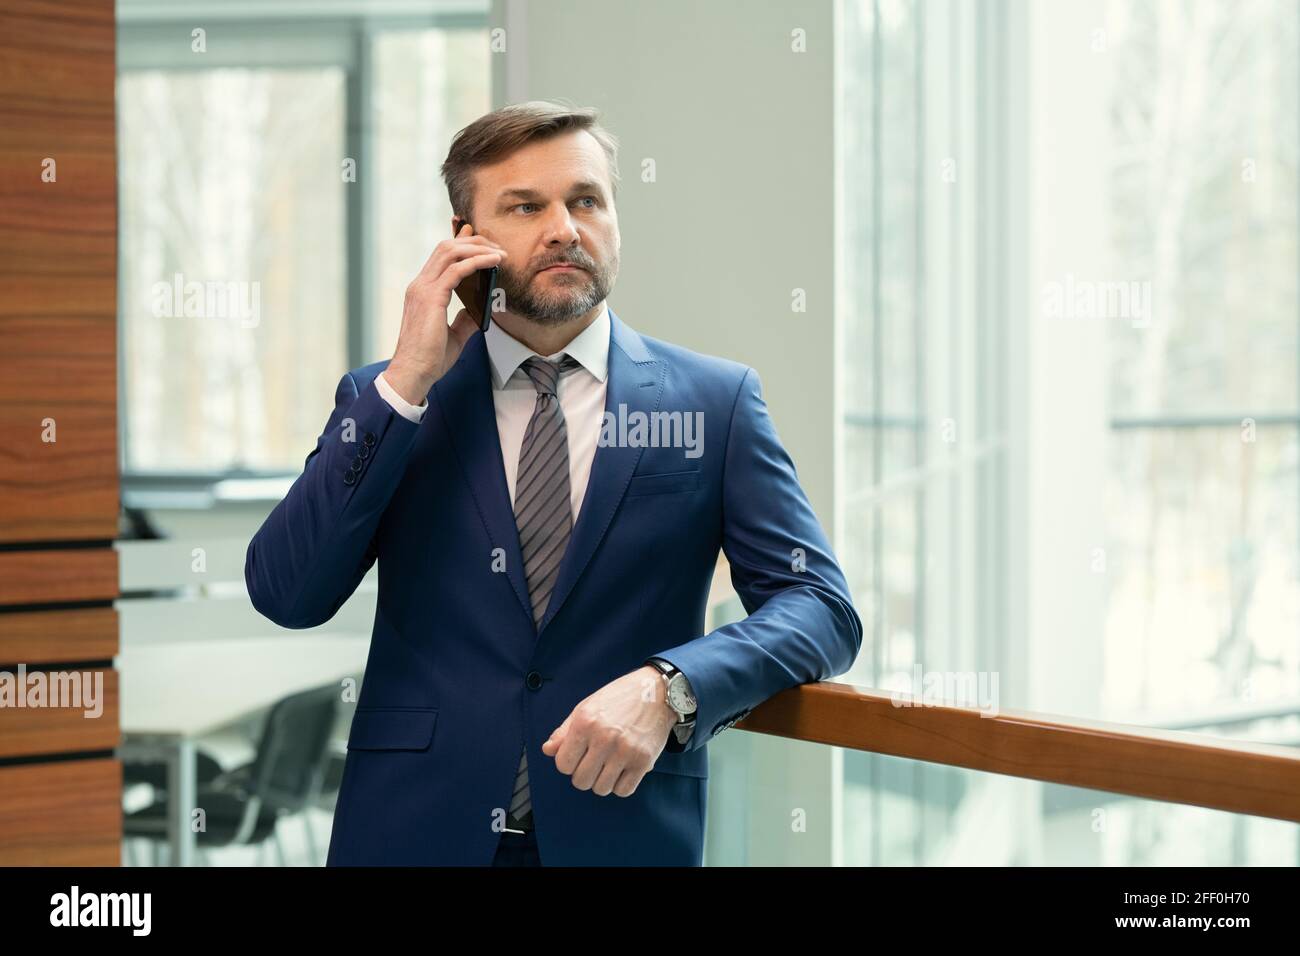 Homme d'affaires sérieux et attentionné d'âge moyen avec une barbe de trois jours penchée sur la main courante couloir de bureau et parler au téléphone Banque D'Images